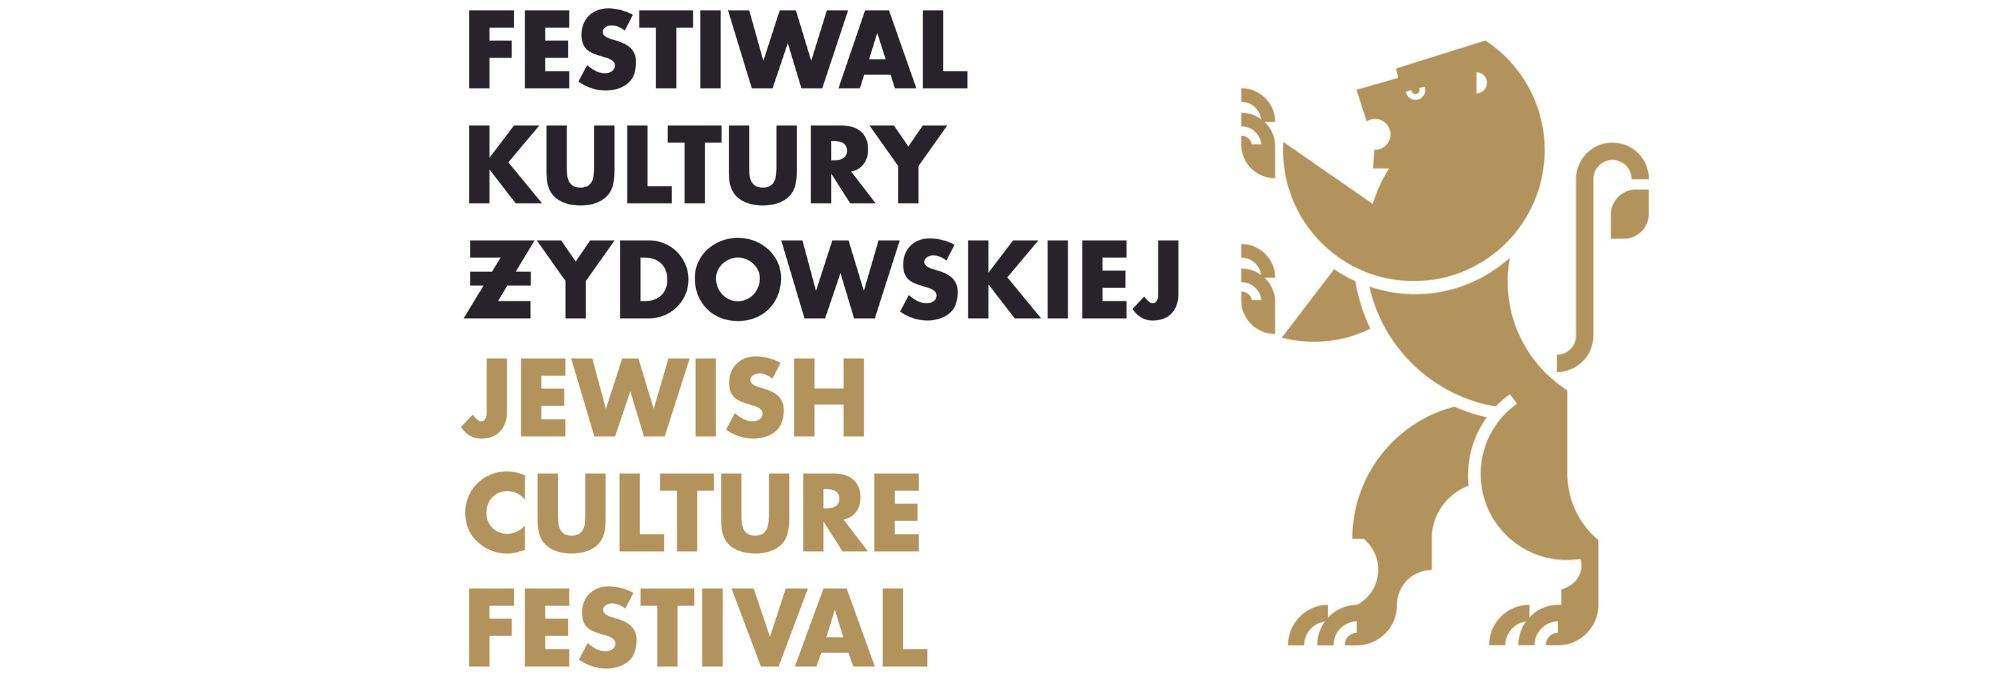 32 Jødisk kulturfestival i Krakow: "Ruah"-brisen